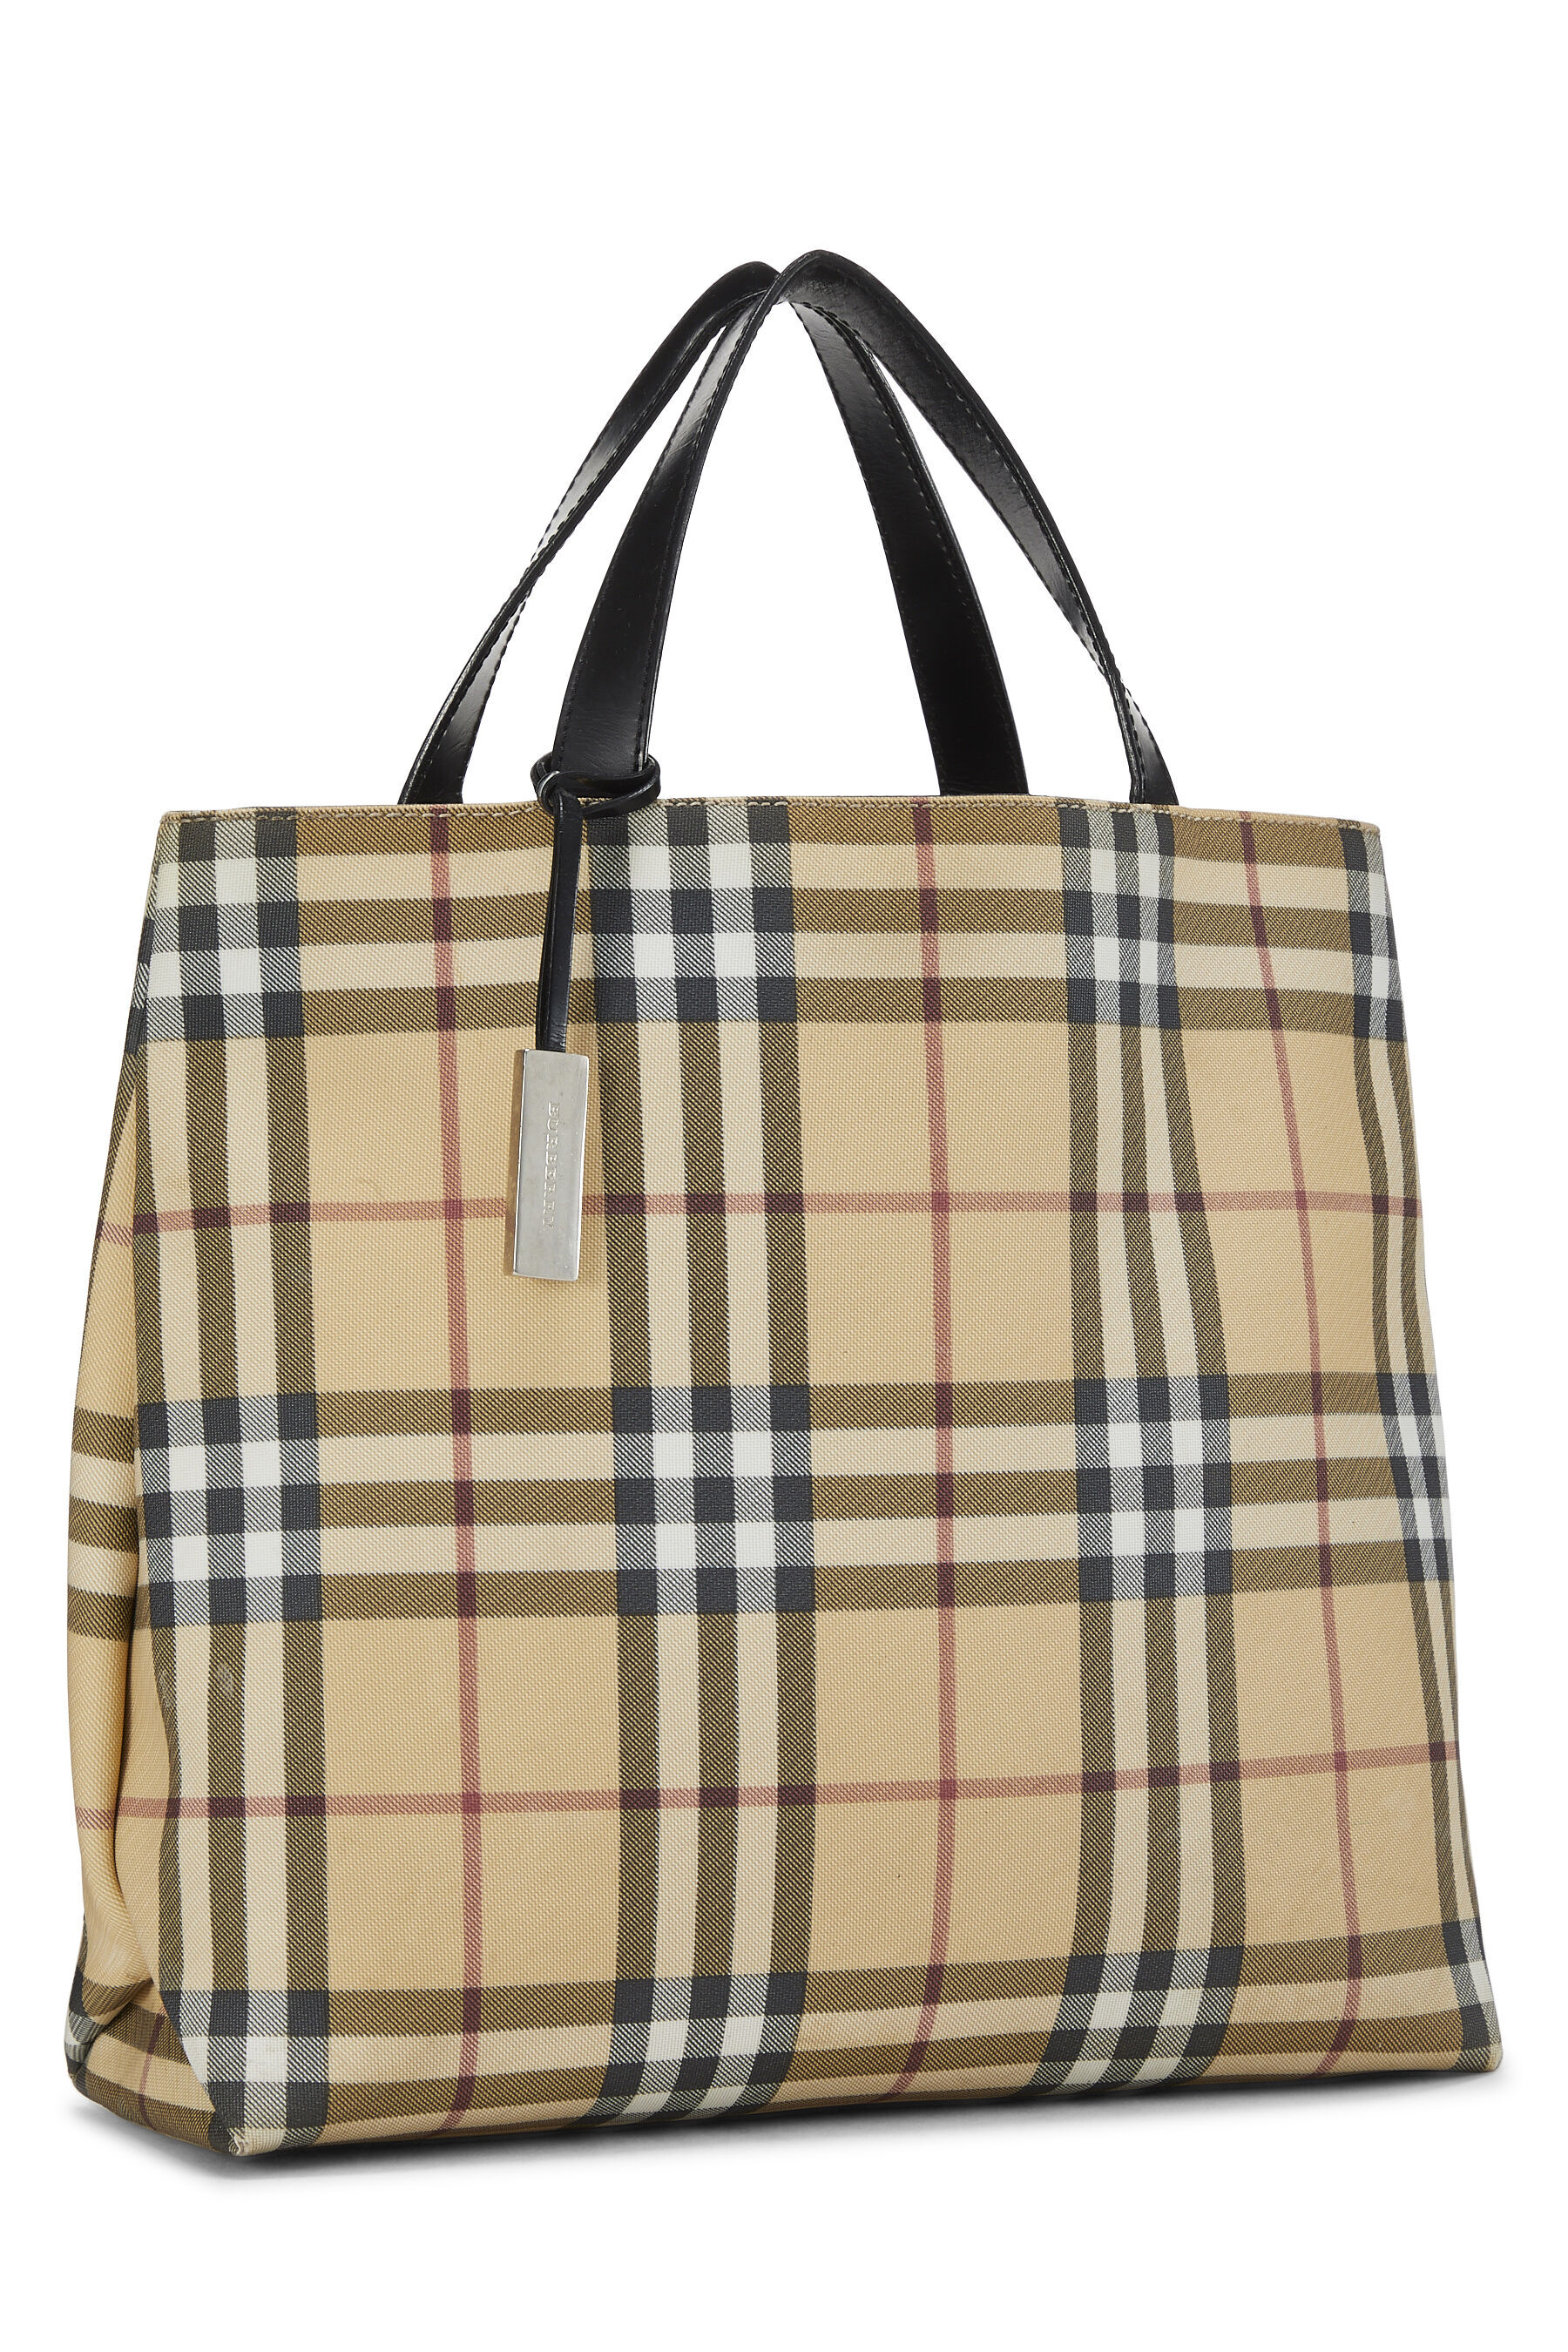 Shop Designer Tote Bags | Vintage Tote Bags Online | WGACA